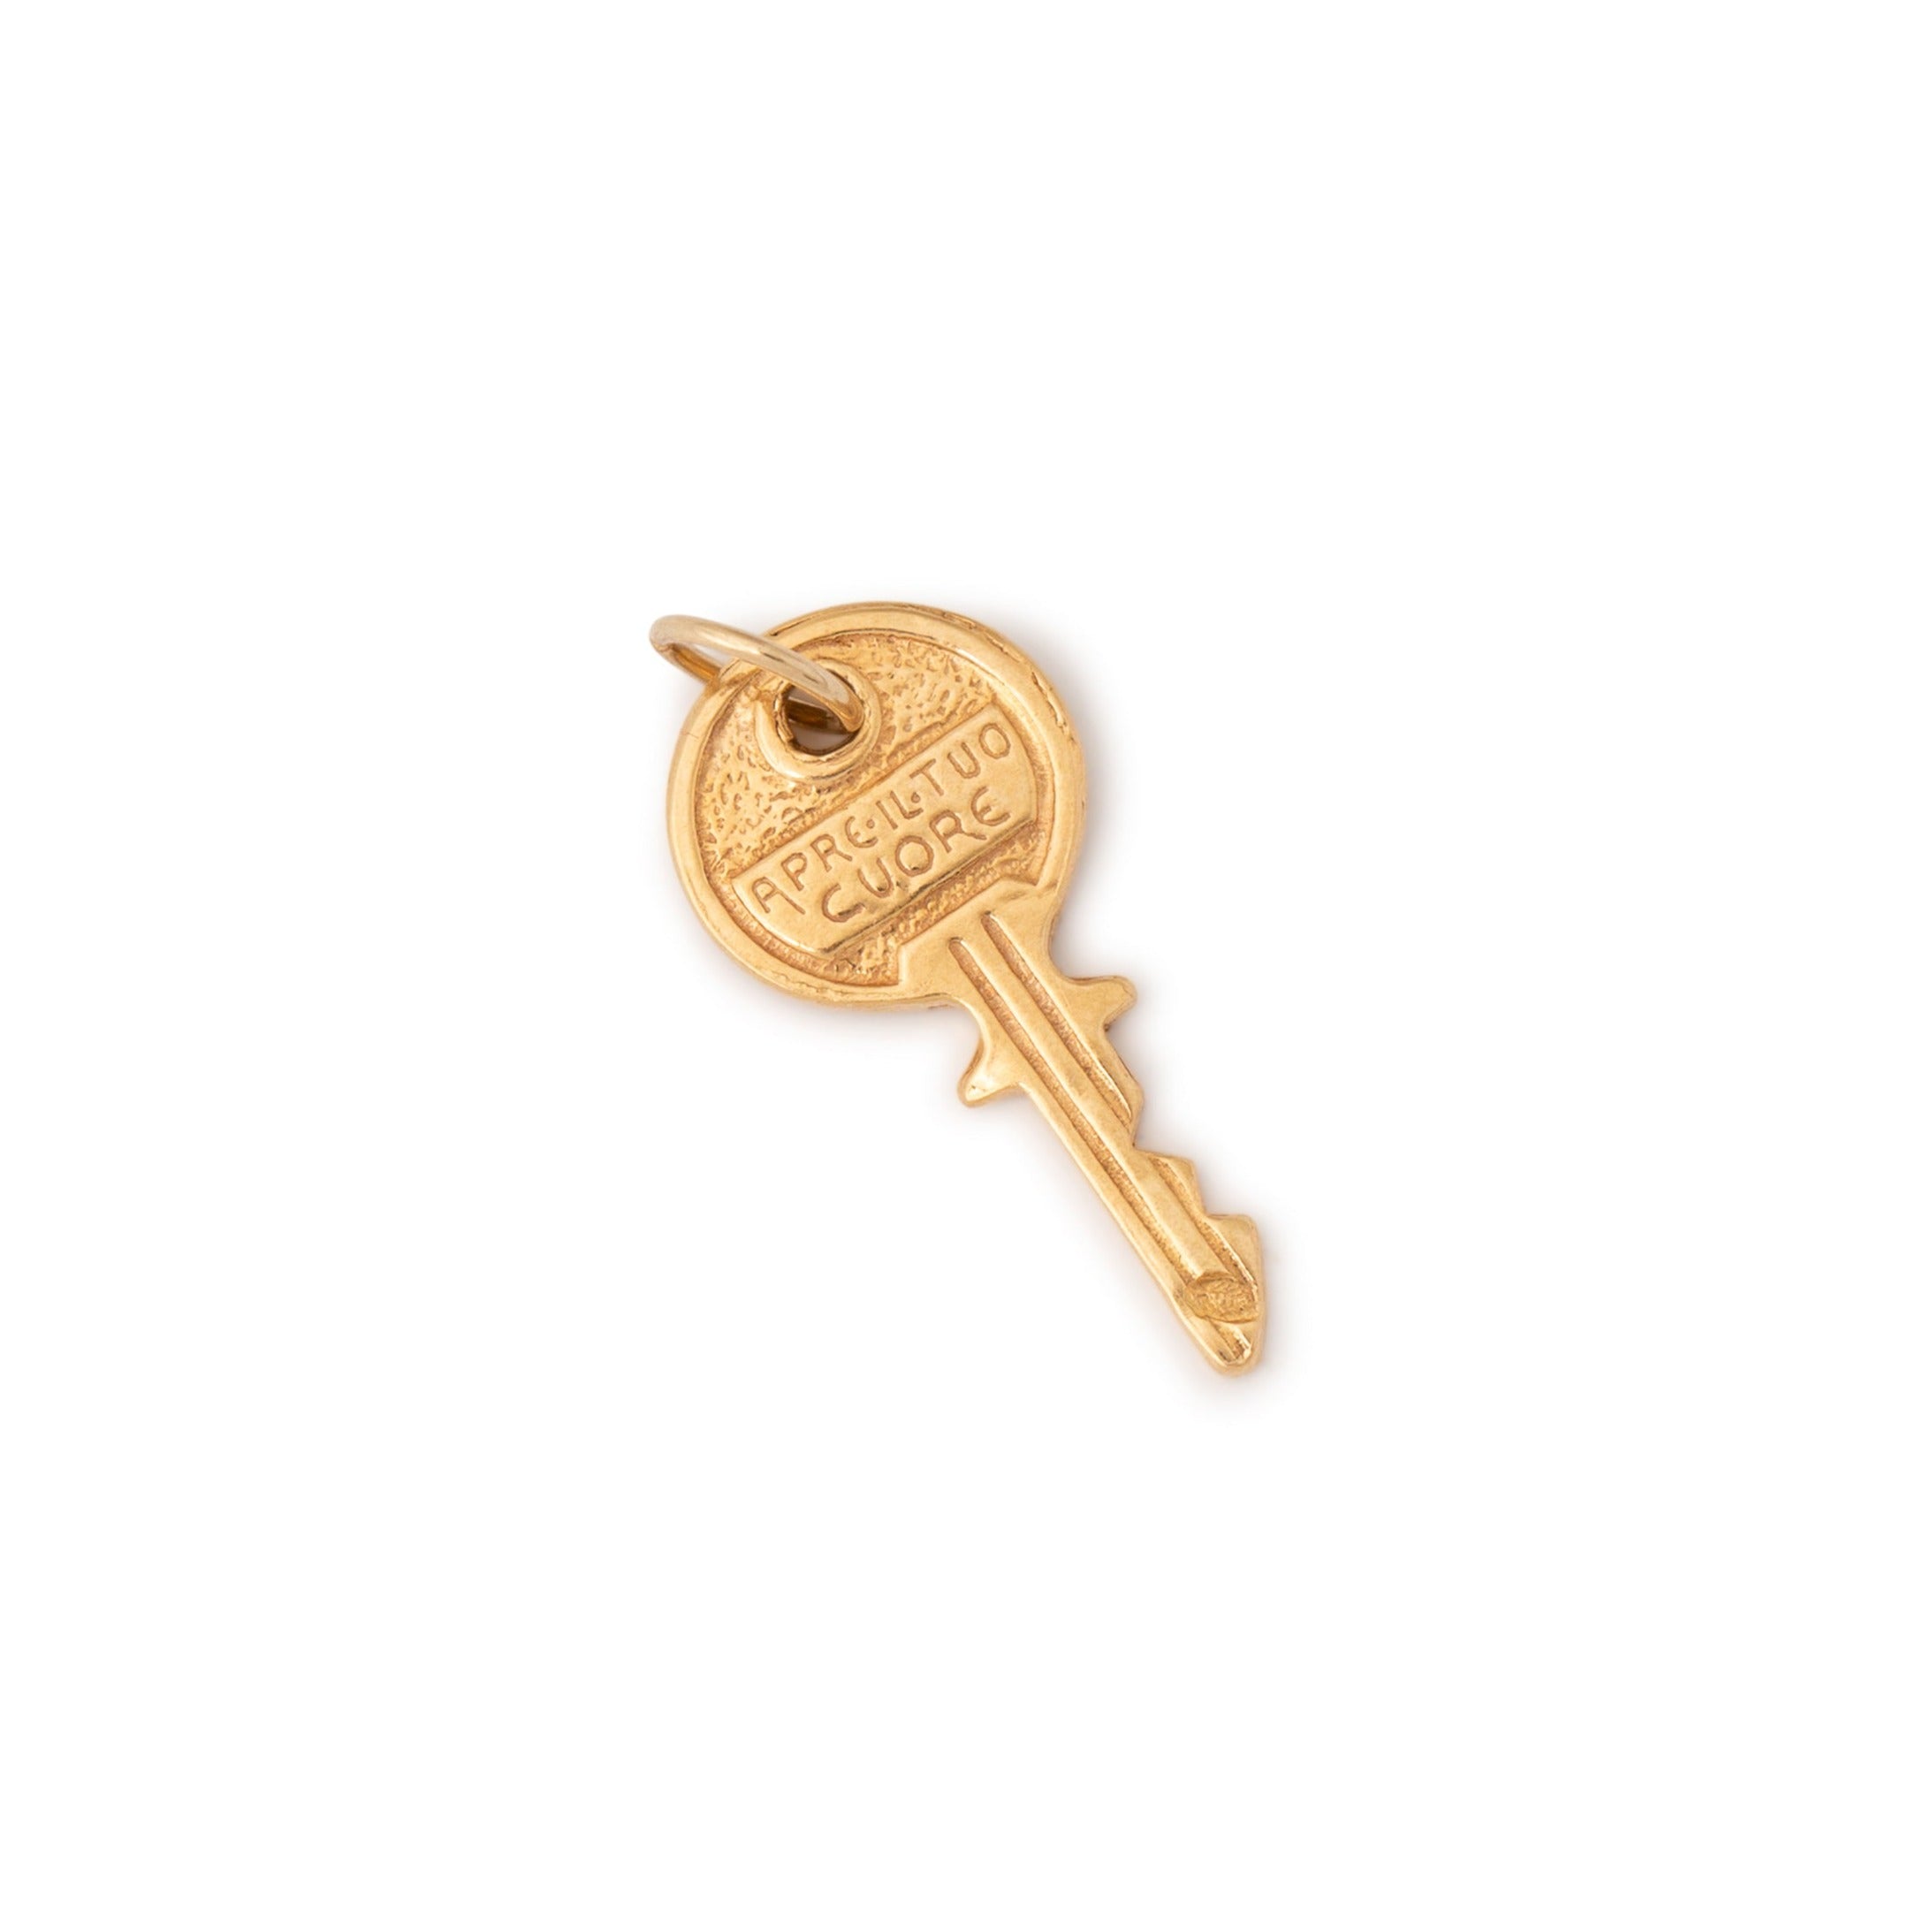 Italian "Apre il Tuo Cuore" 18k Gold Key Charm